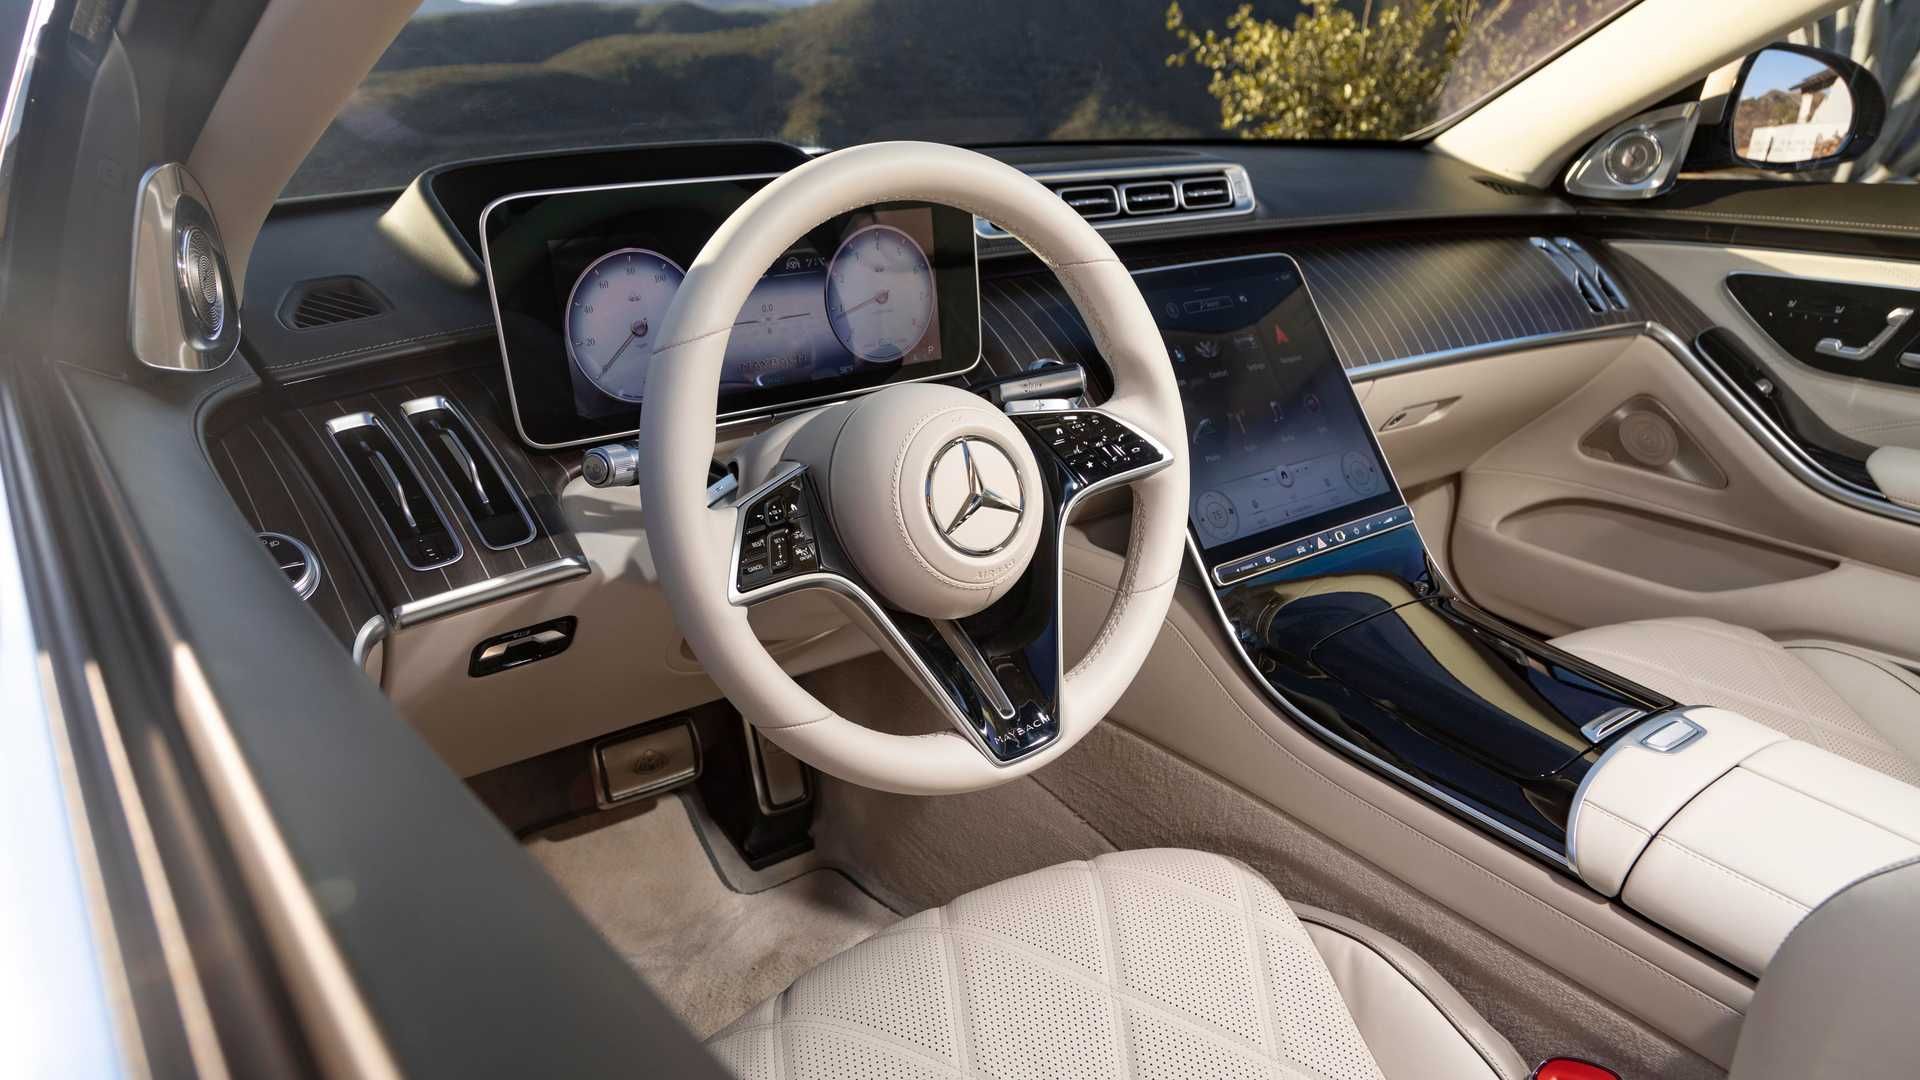 مرجع متخصصين ايران Mercedes-Benz S-Class Maybach  مرسدس بنز اس كلاس ميباخ نماي داخلي